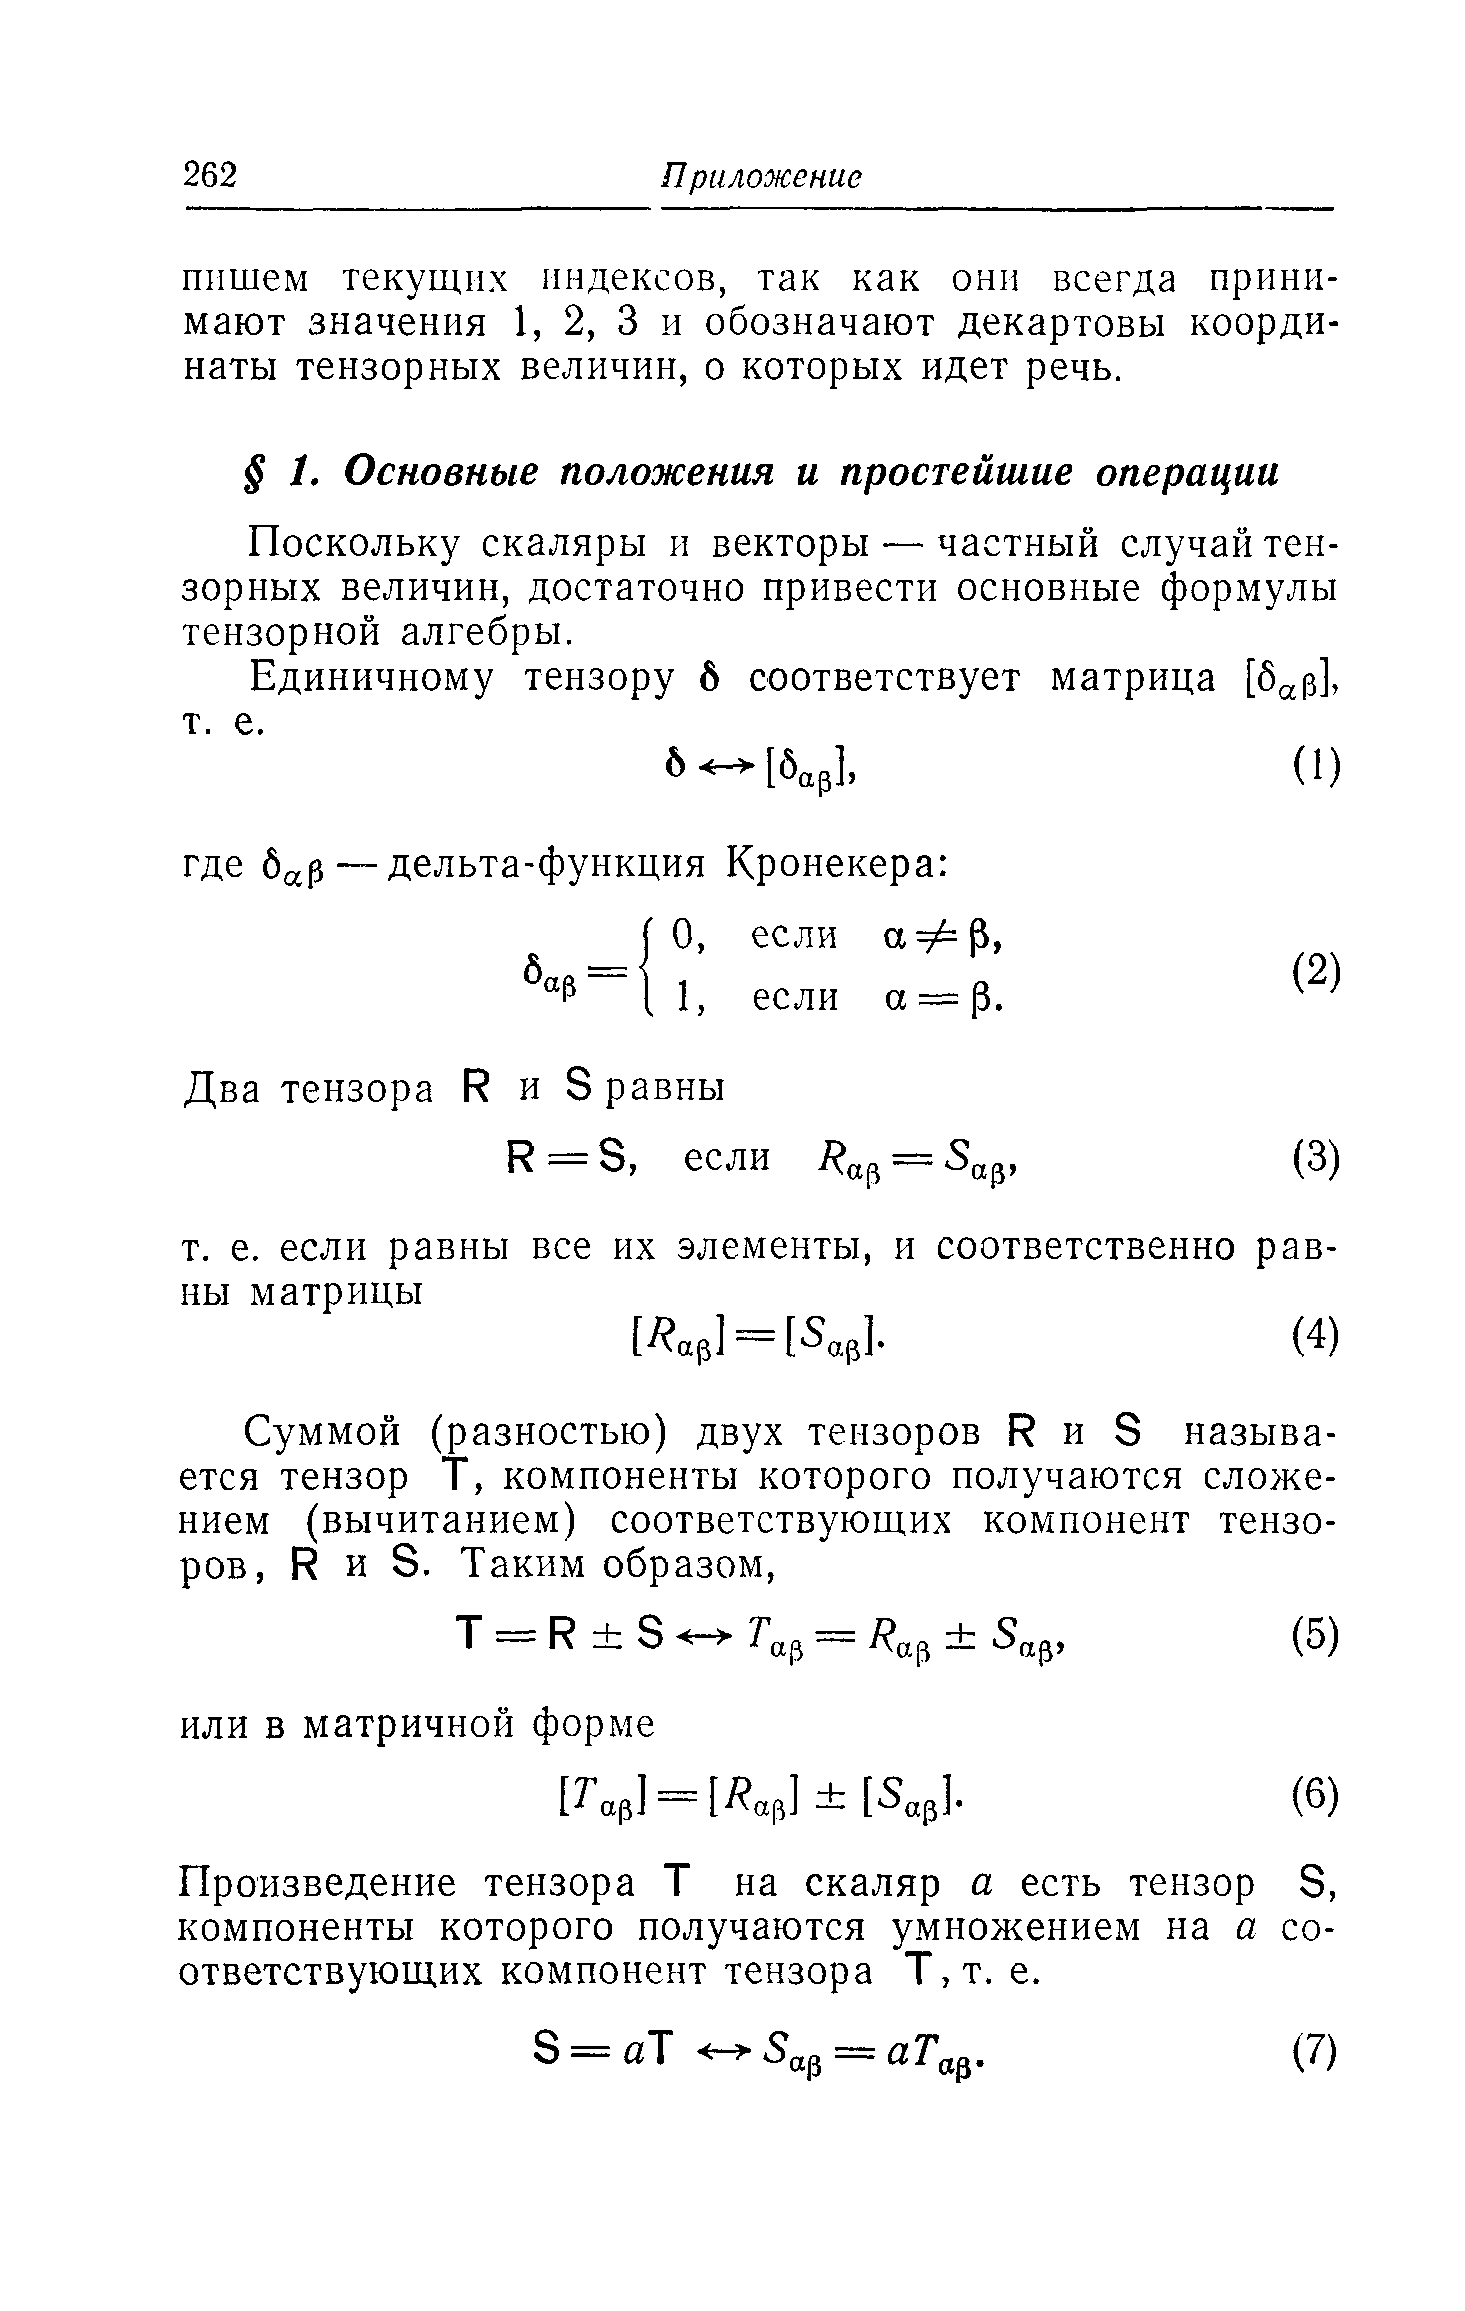 Поскольку скаляры и векторы — частный случай тензорных величин, достаточно привести основные формулы тензорной алгебры.